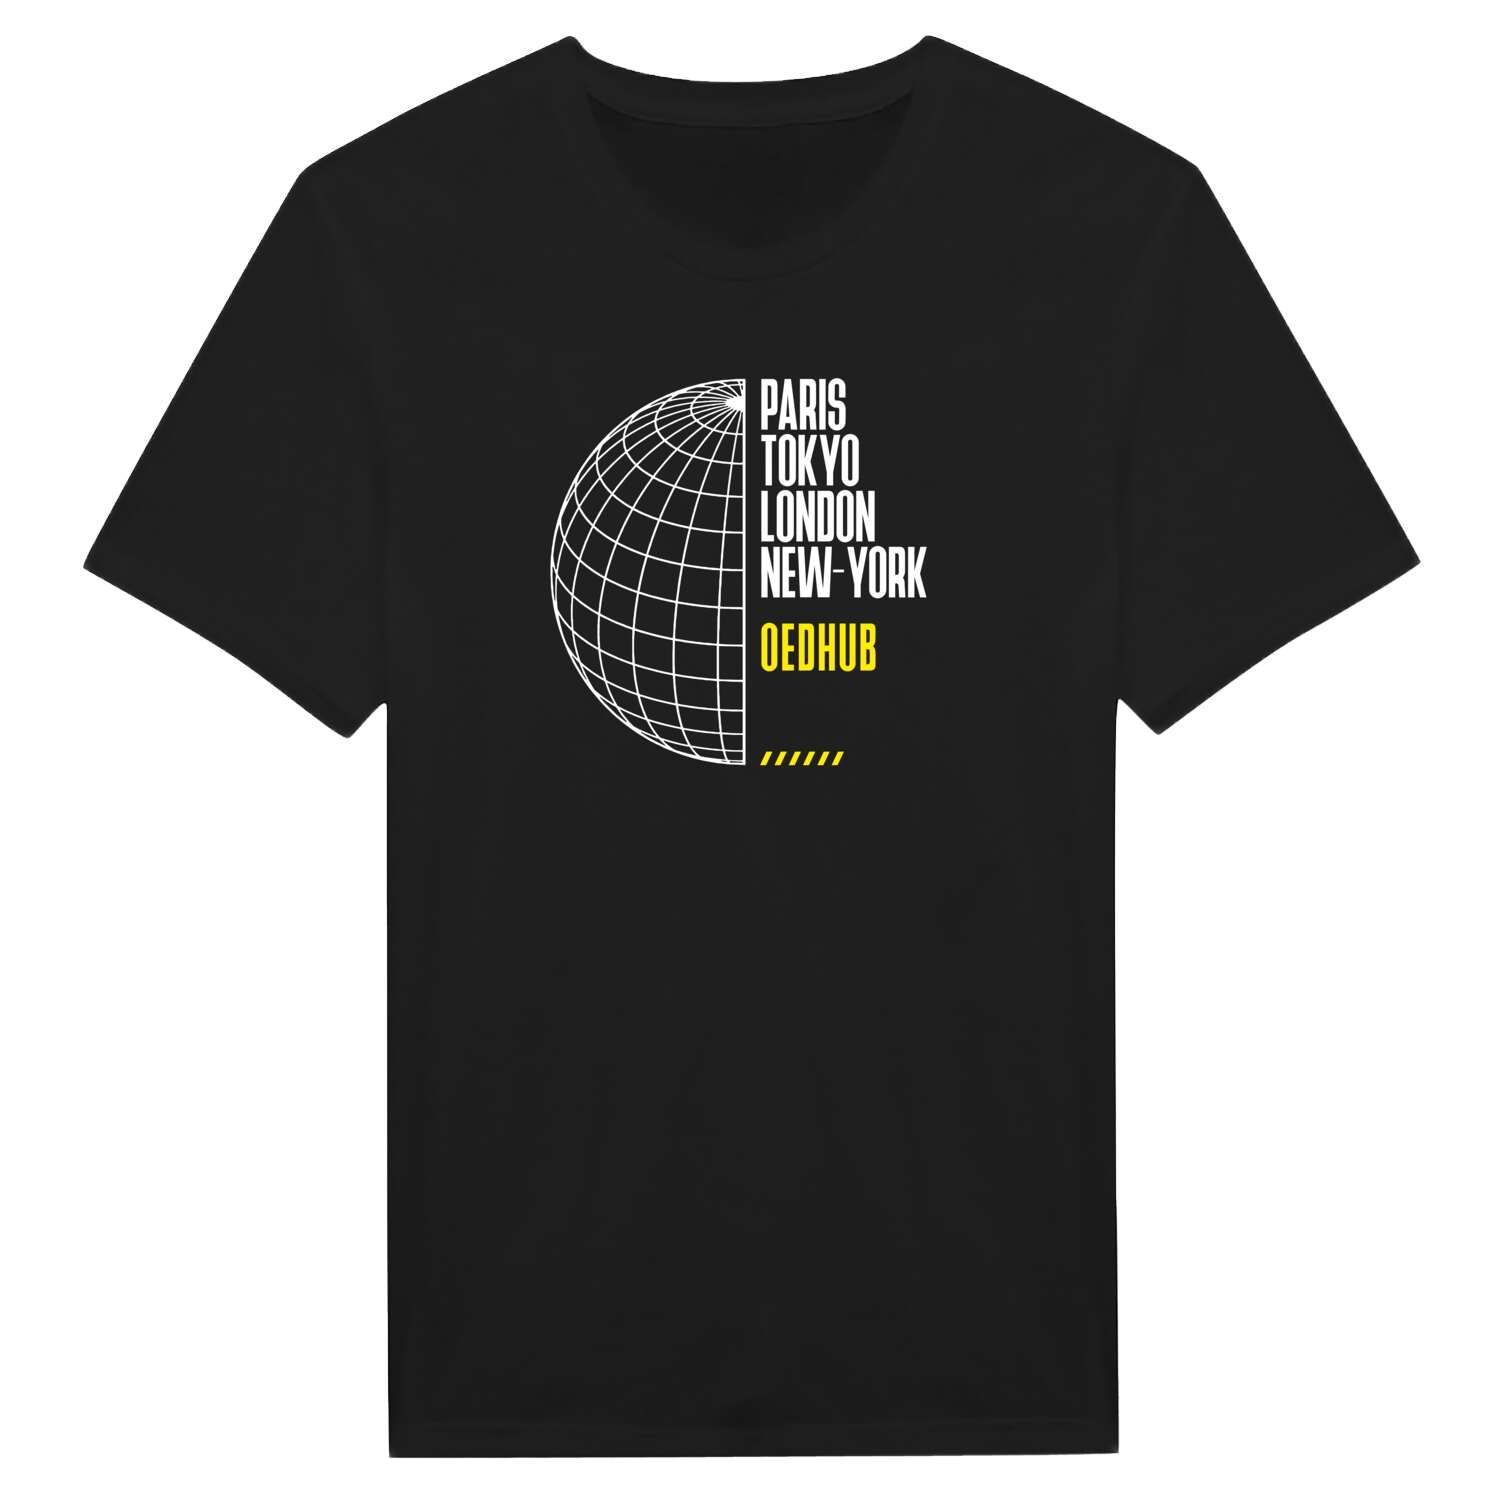 Oedhub T-Shirt »Paris Tokyo London«